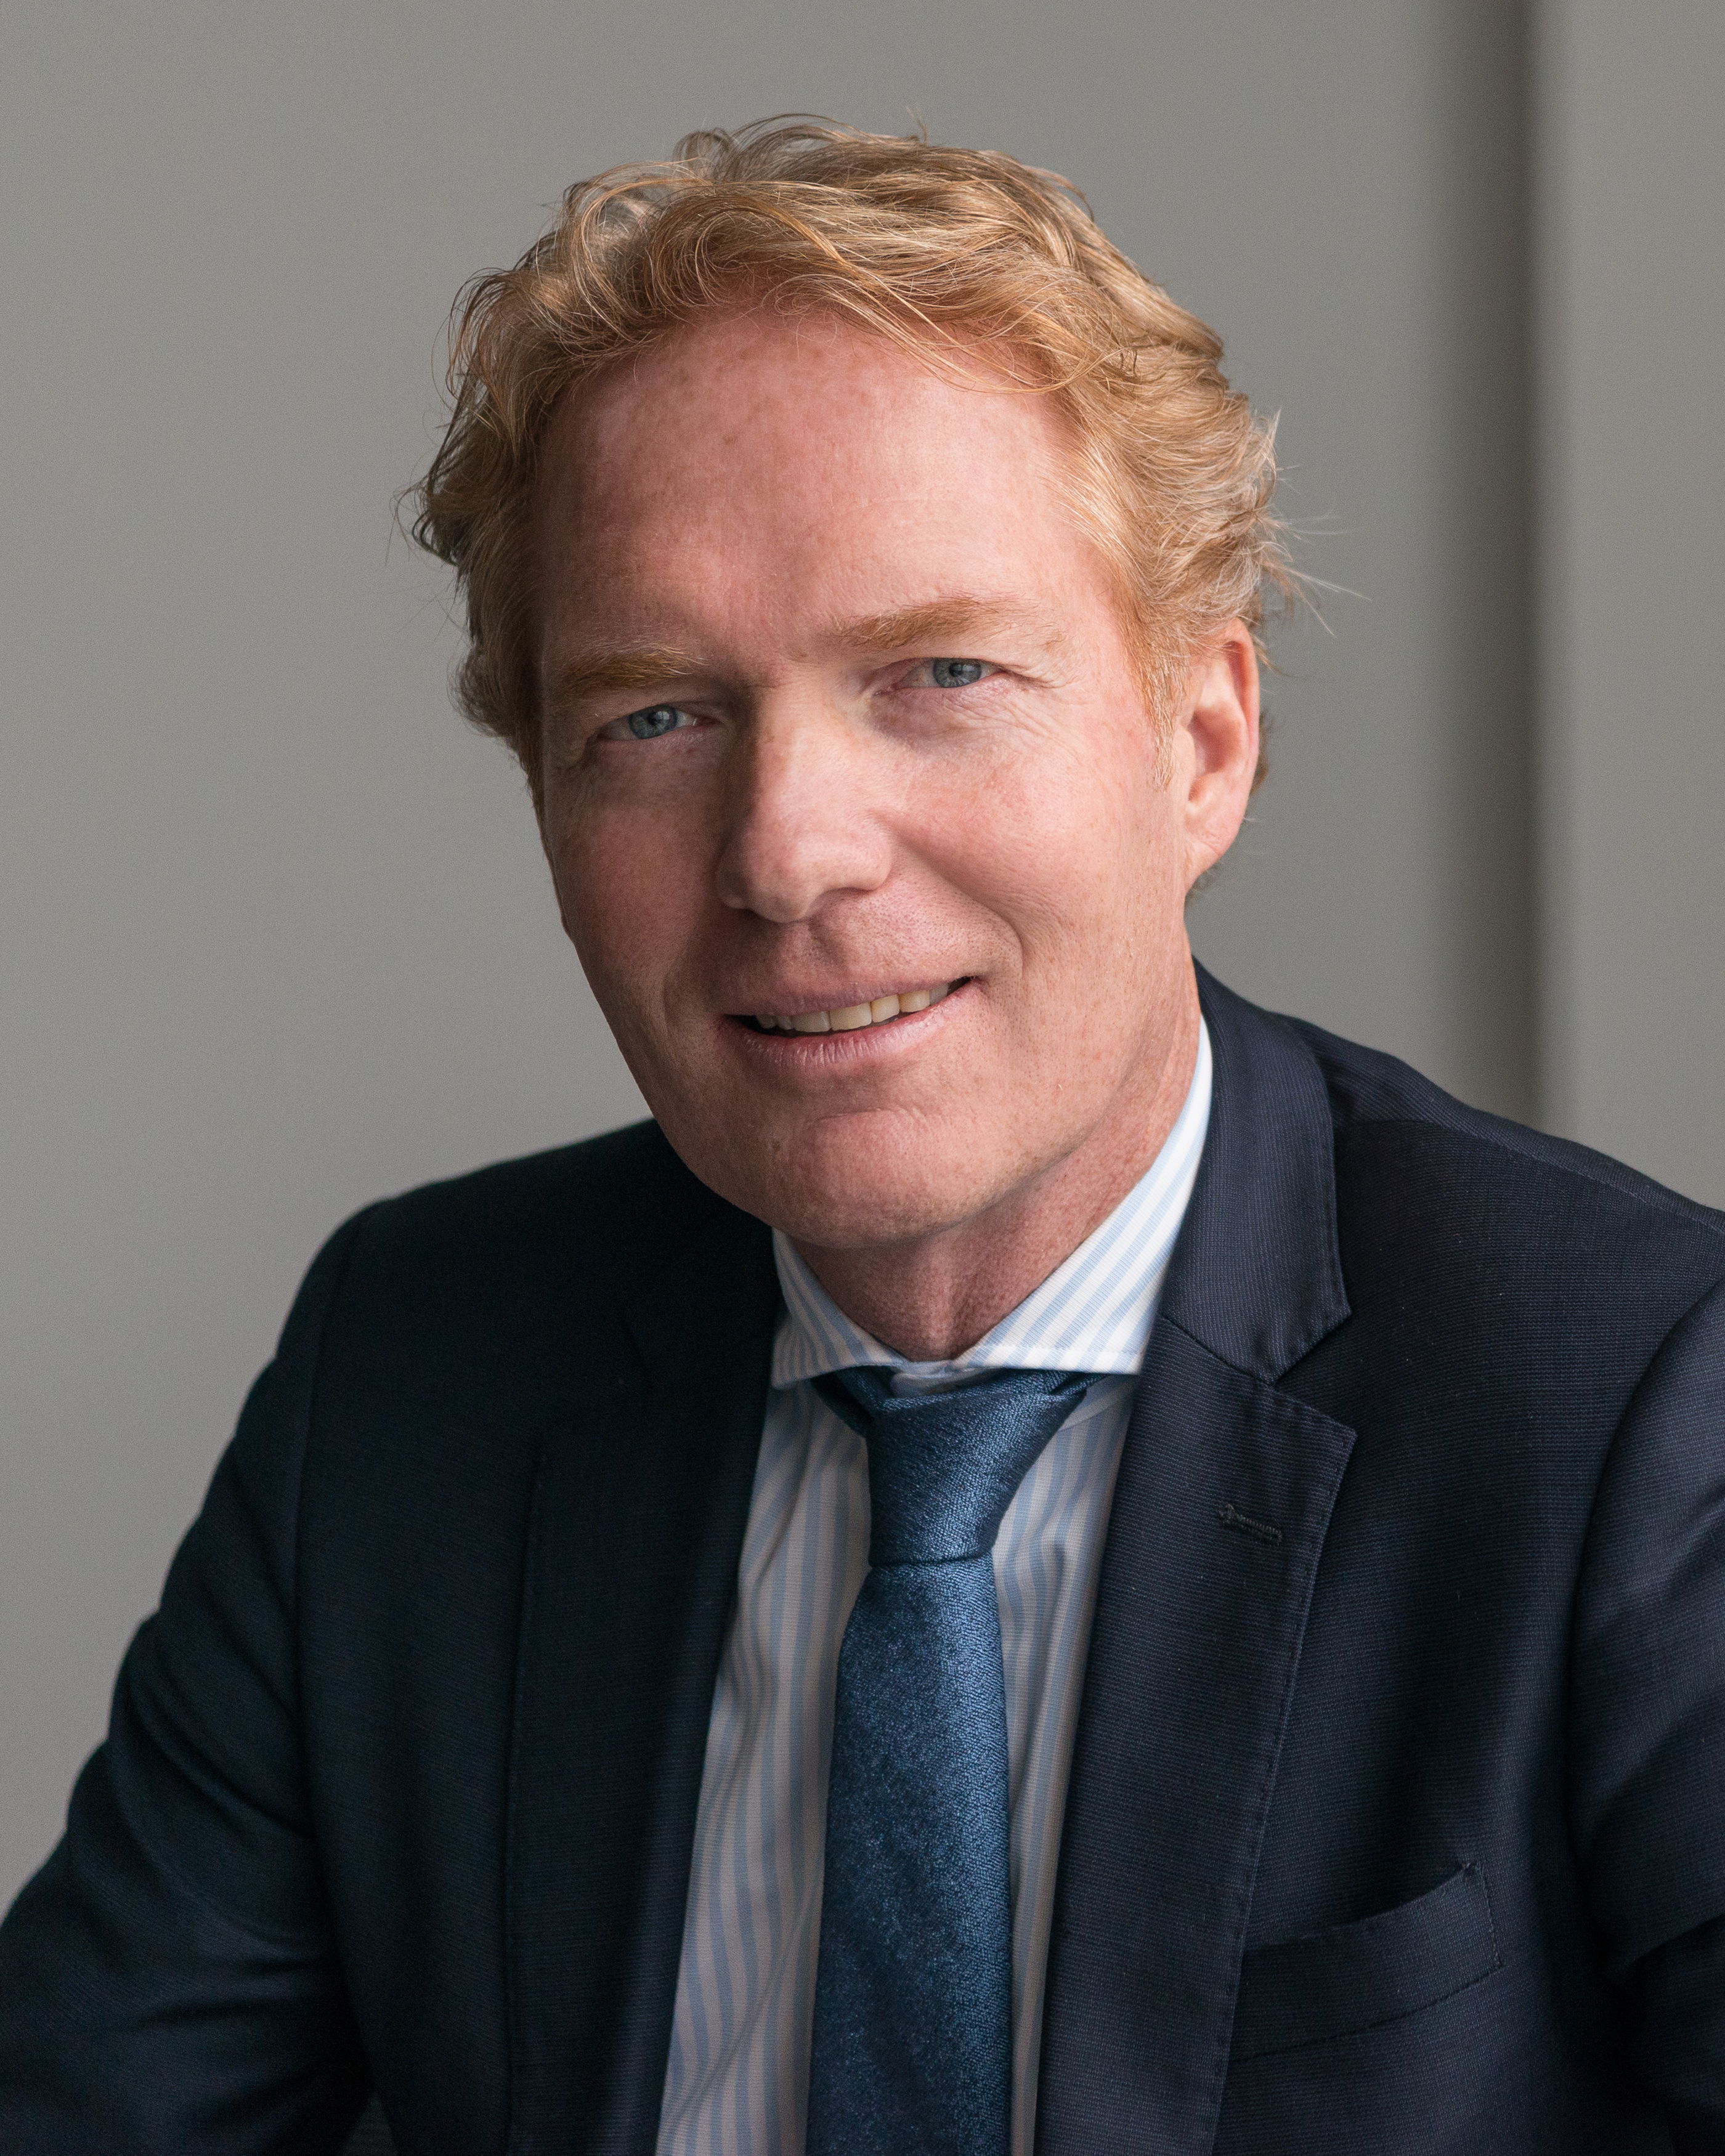 Maurits Binnendijk vicepresidente y director general de la organización comercial de DRiV en EMEA